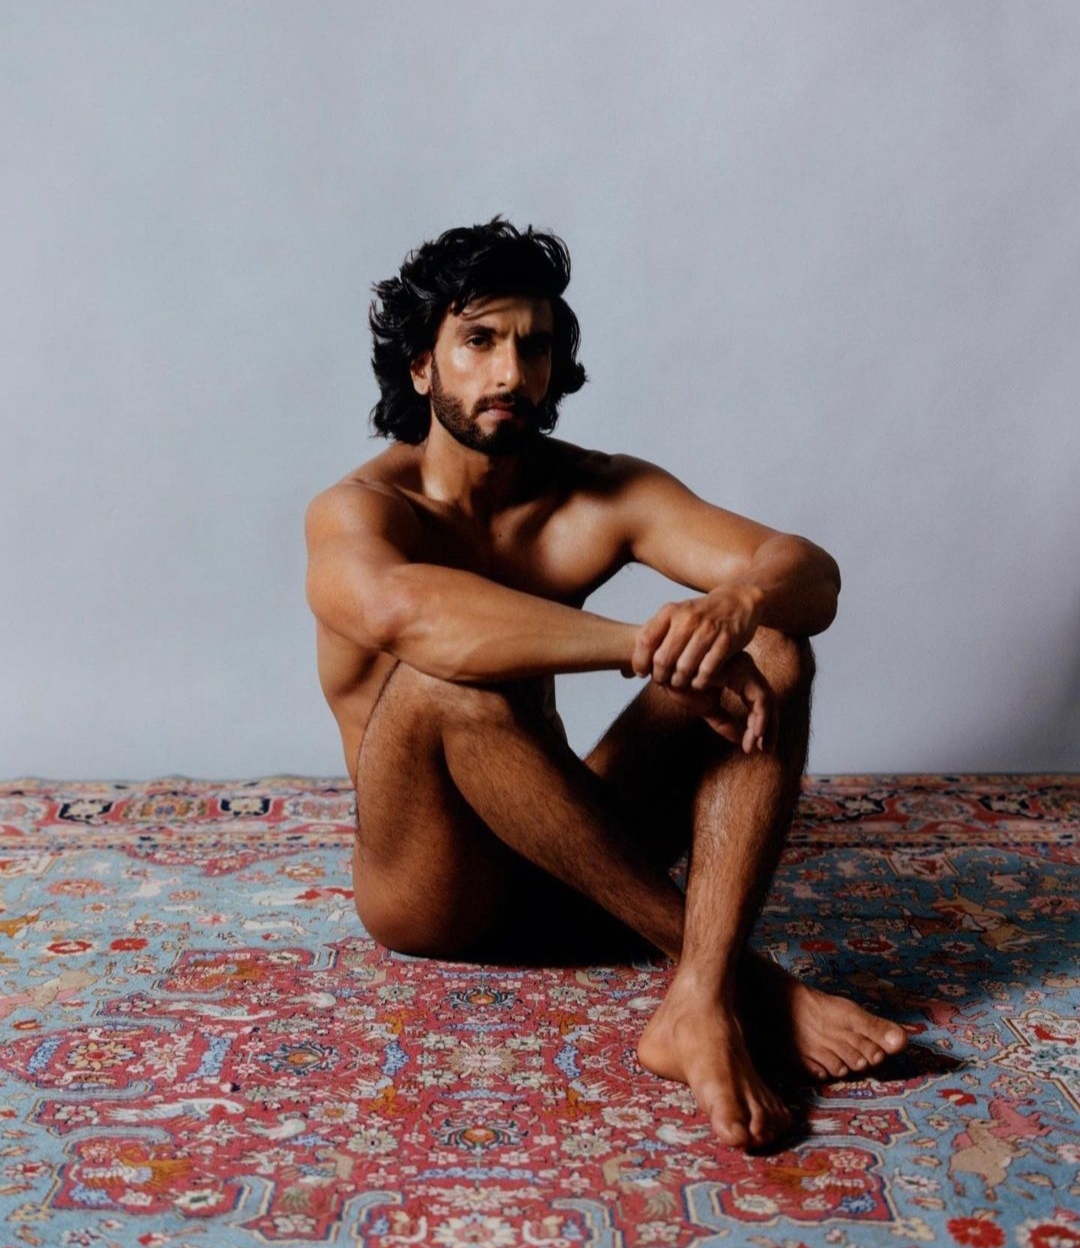 FIR against Ranveer Singh for nude photoshoot